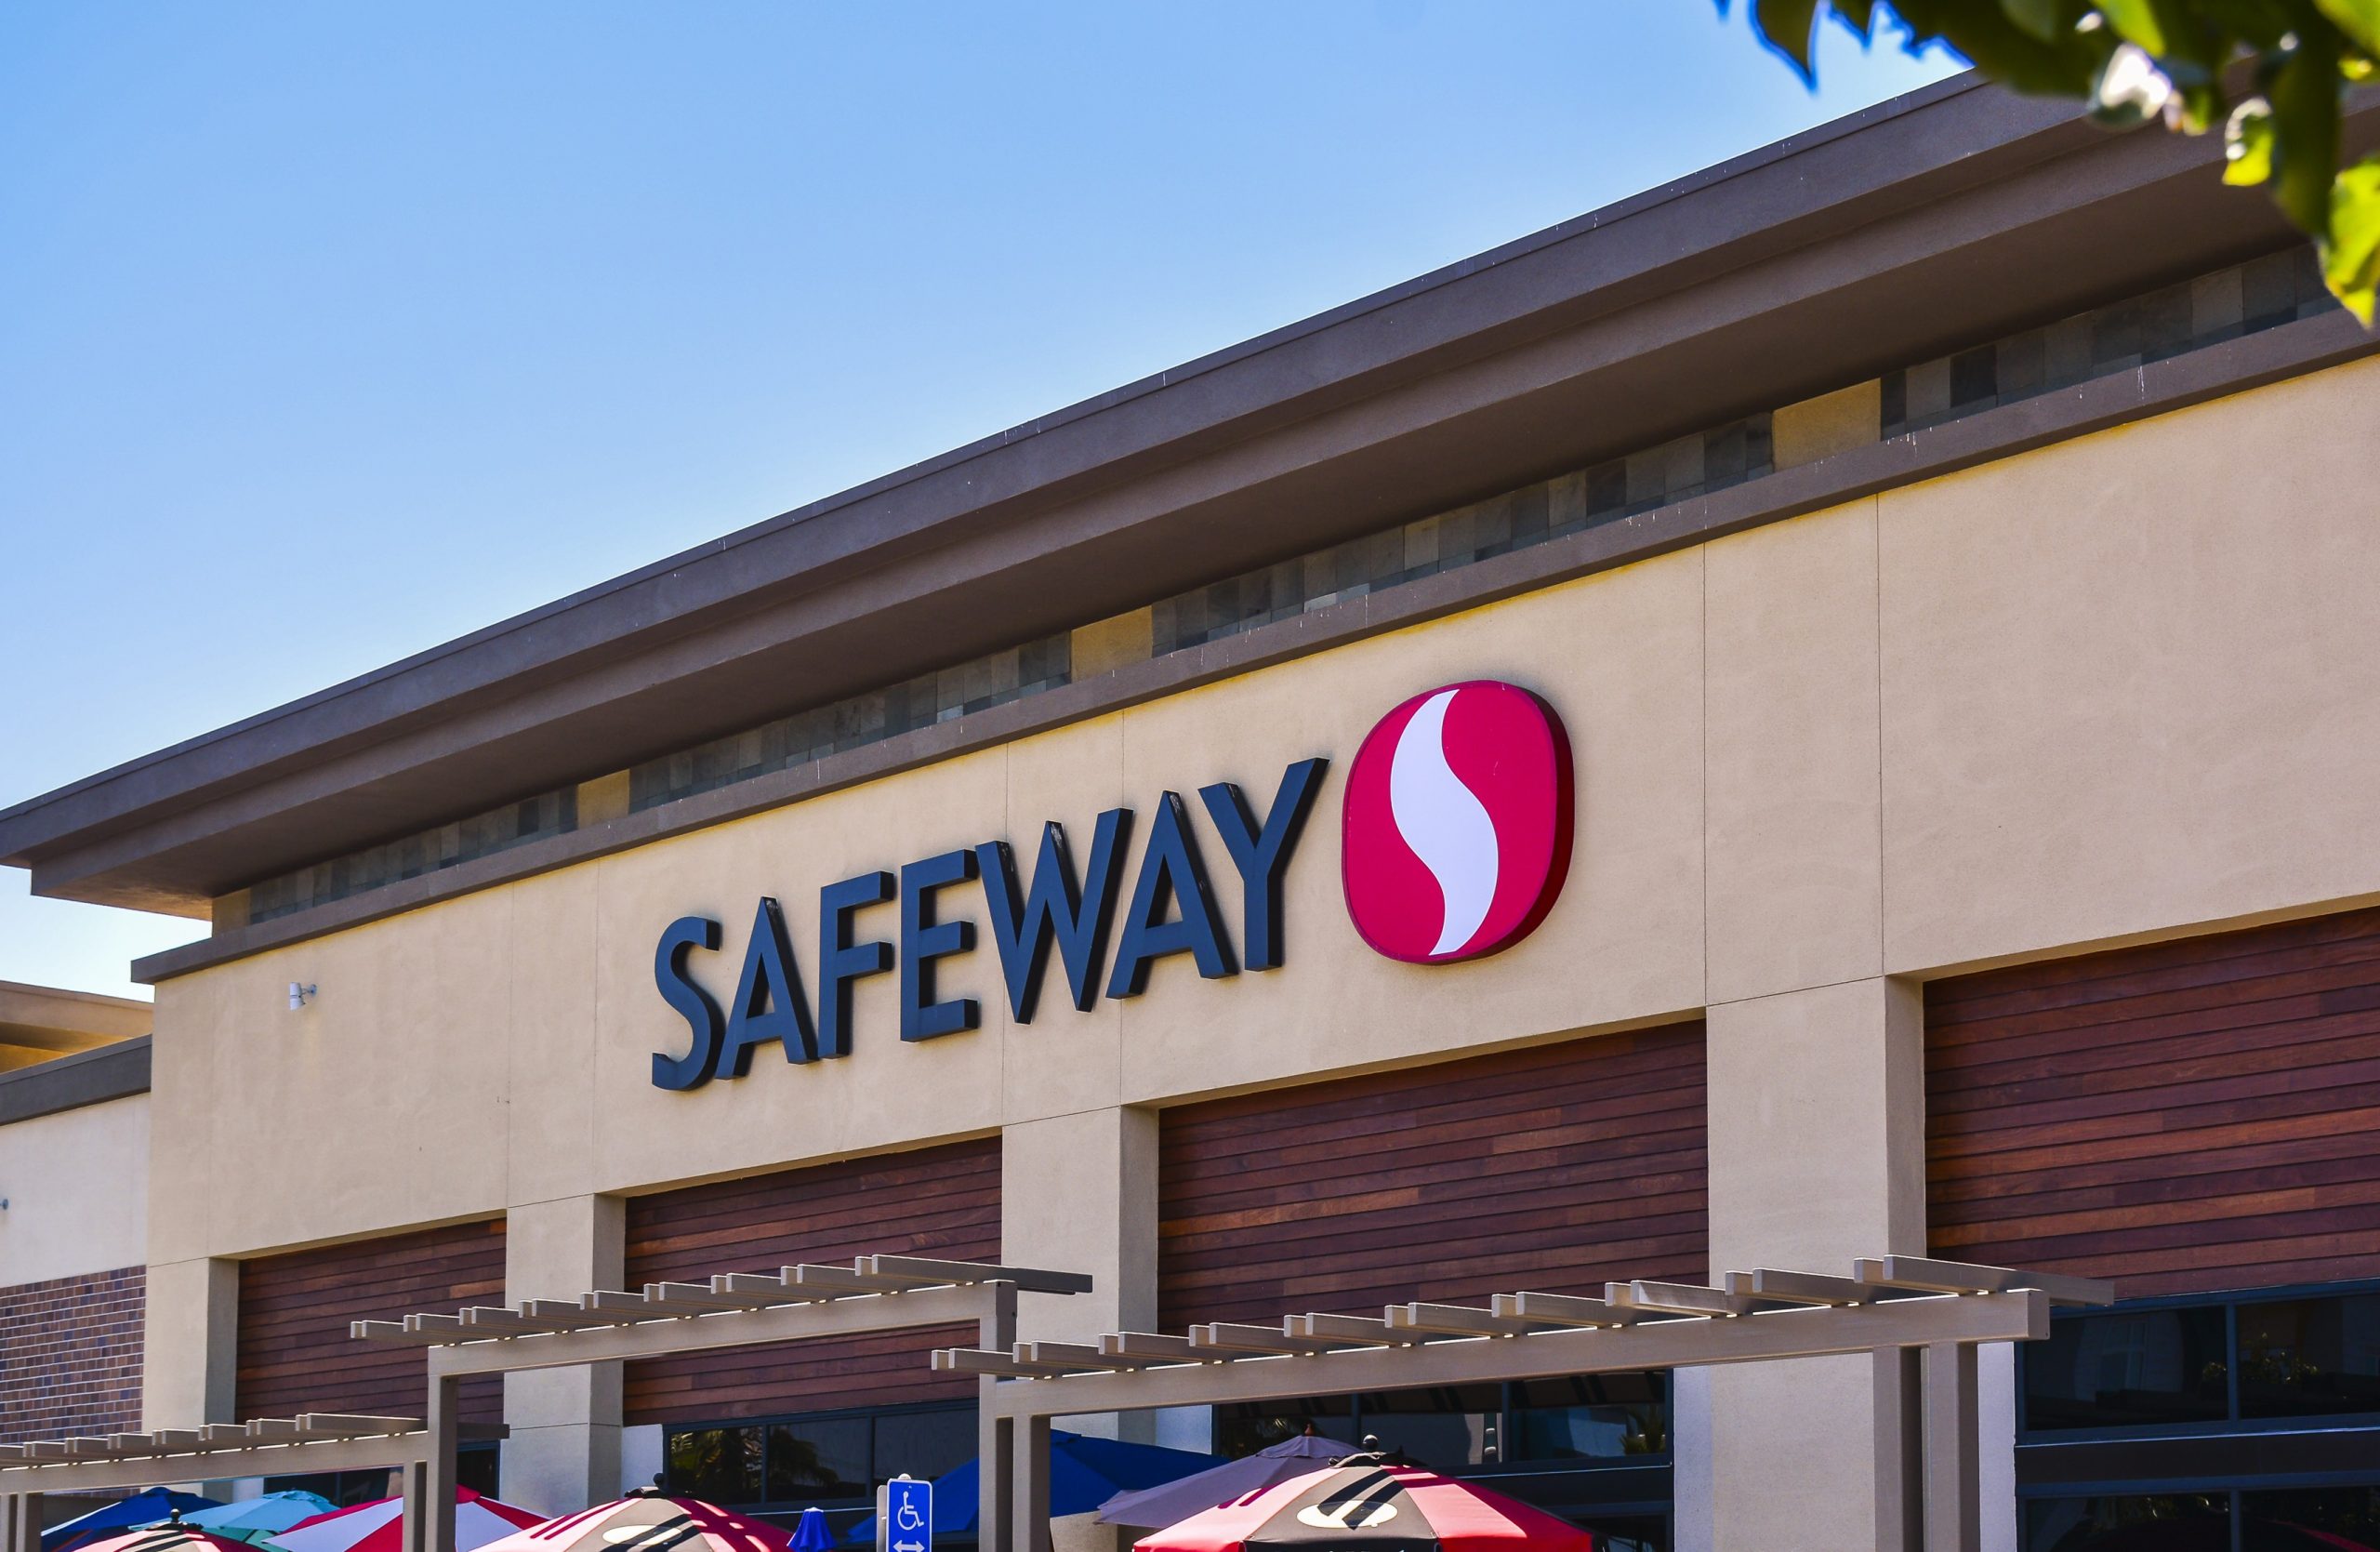 El exterior de una tienda Safeway con el nombre y el logotipo de la empresa.